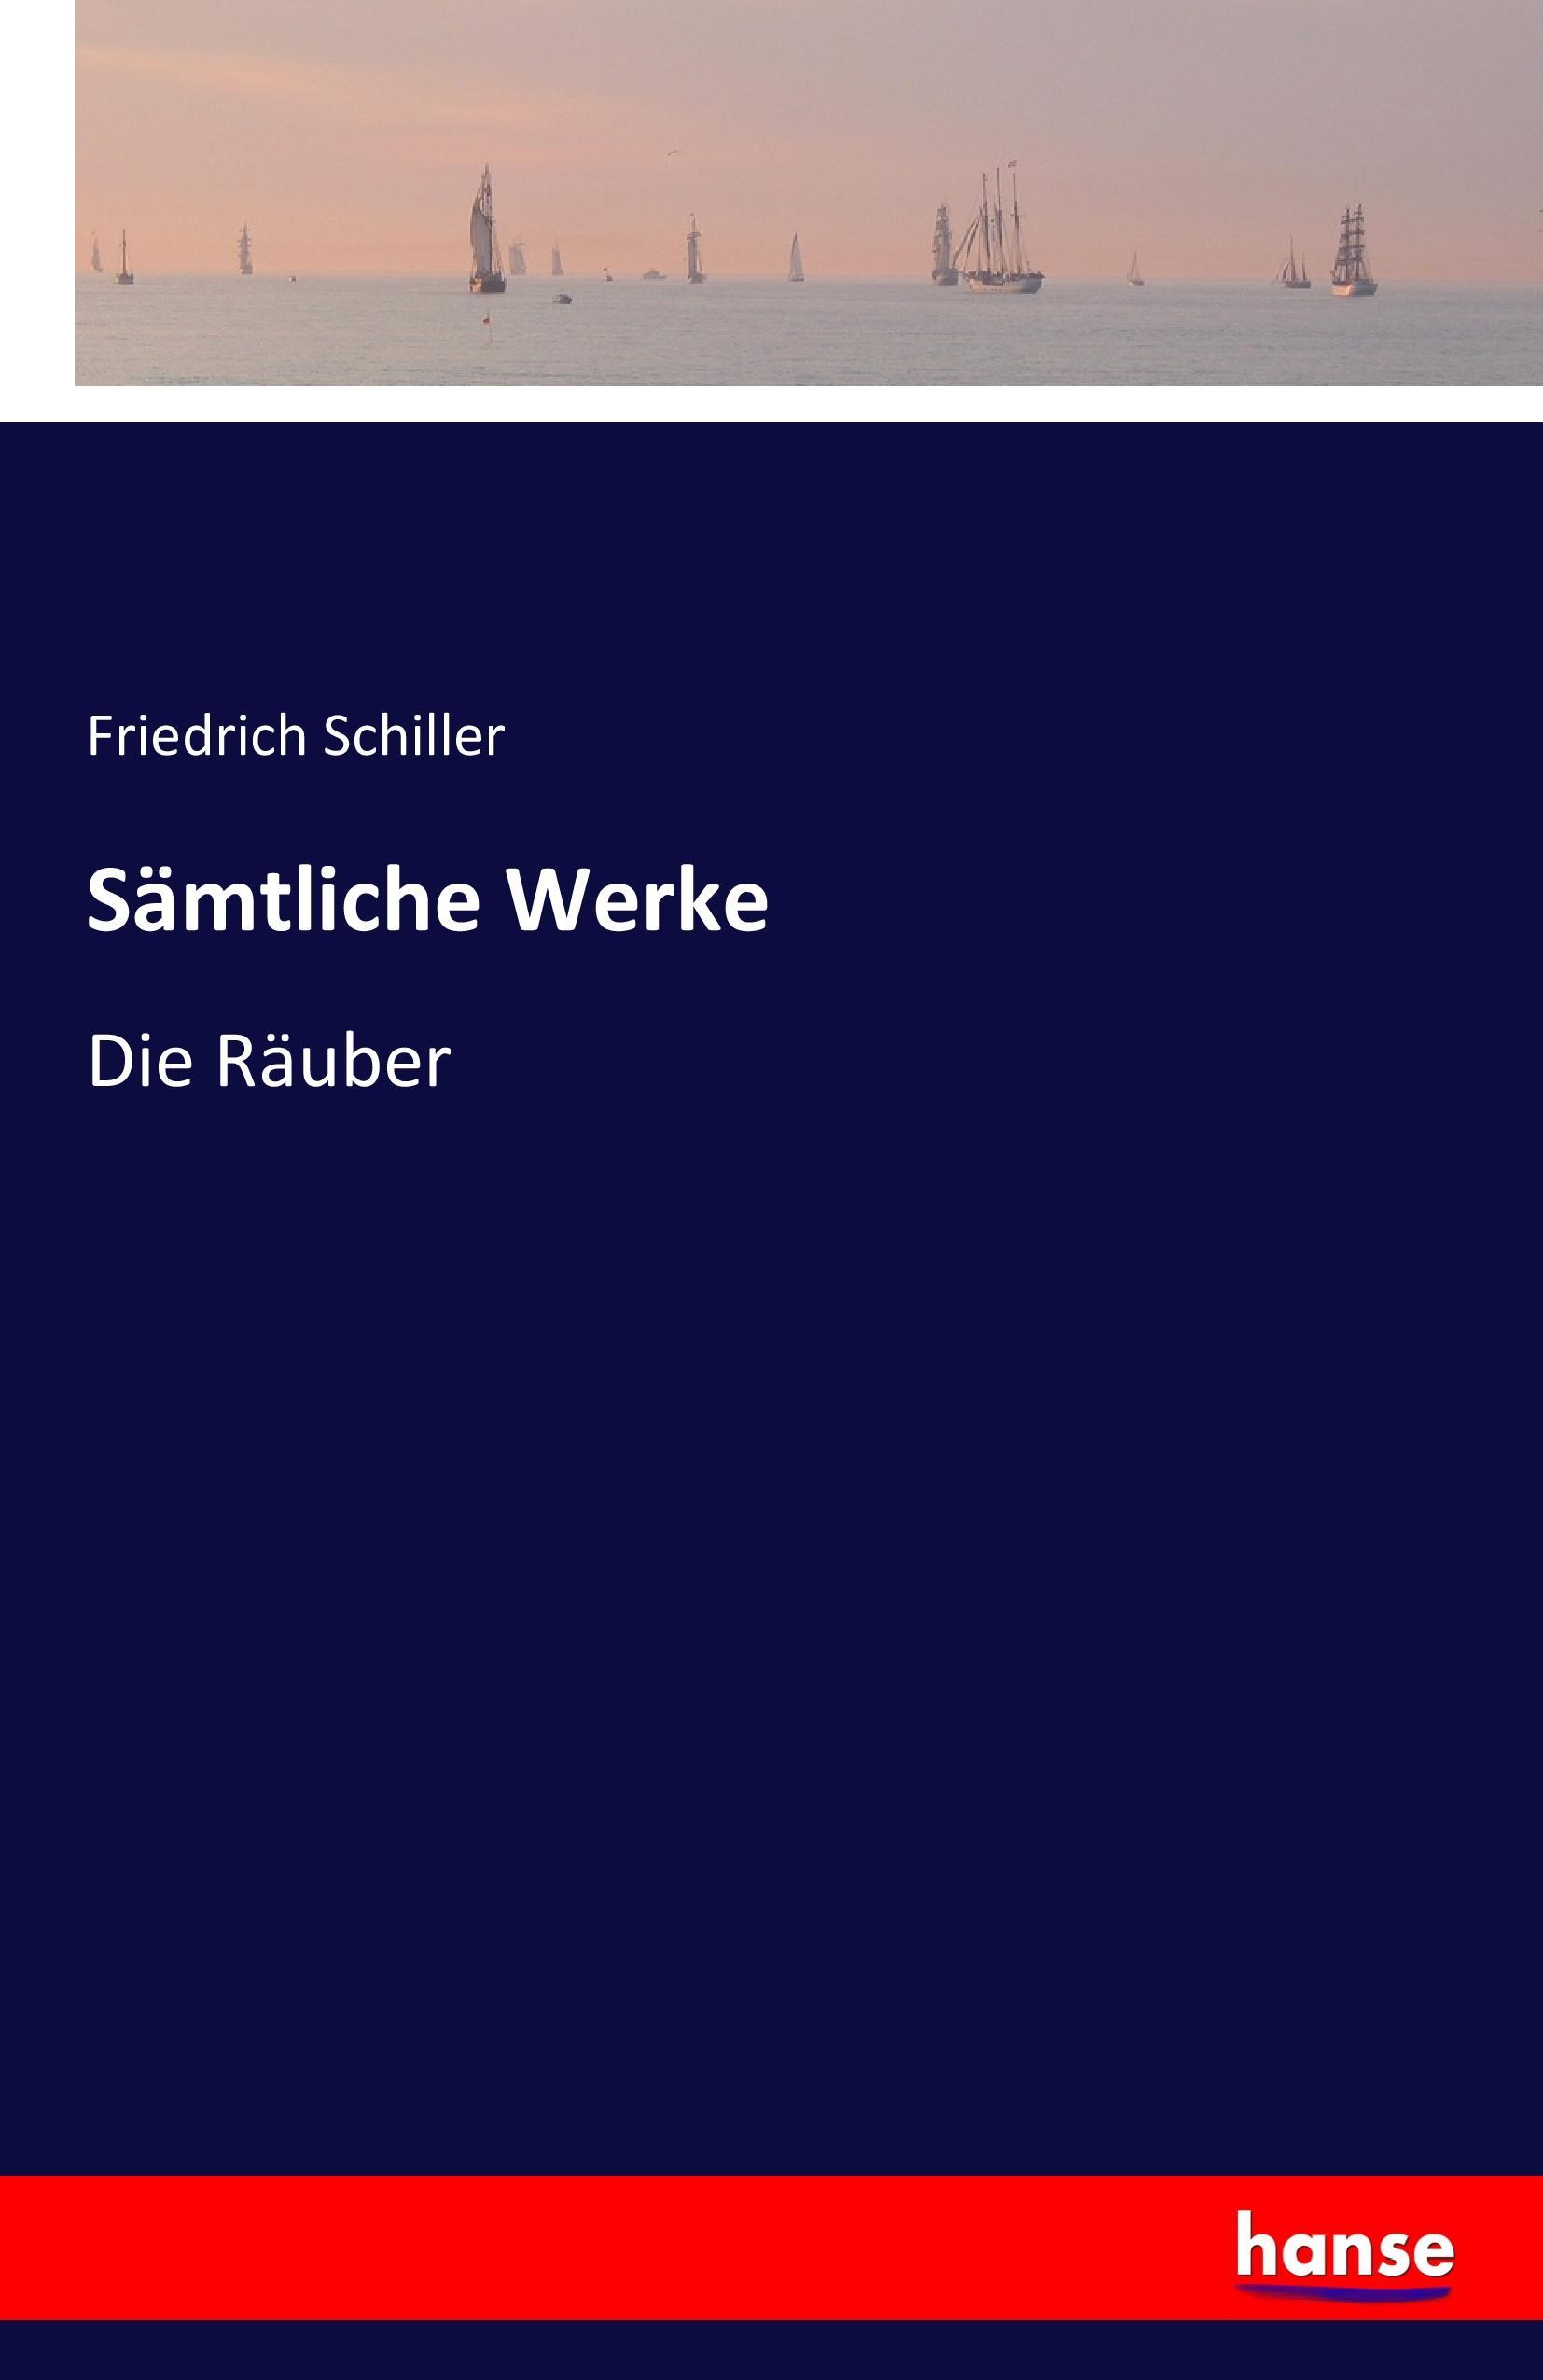 Sämtliche Werke | Die Räuber | Friedrich Schiller | Taschenbuch | Paperback | 296 S. | Deutsch | 2016 | hansebooks | EAN 9783741133534 - Schiller, Friedrich